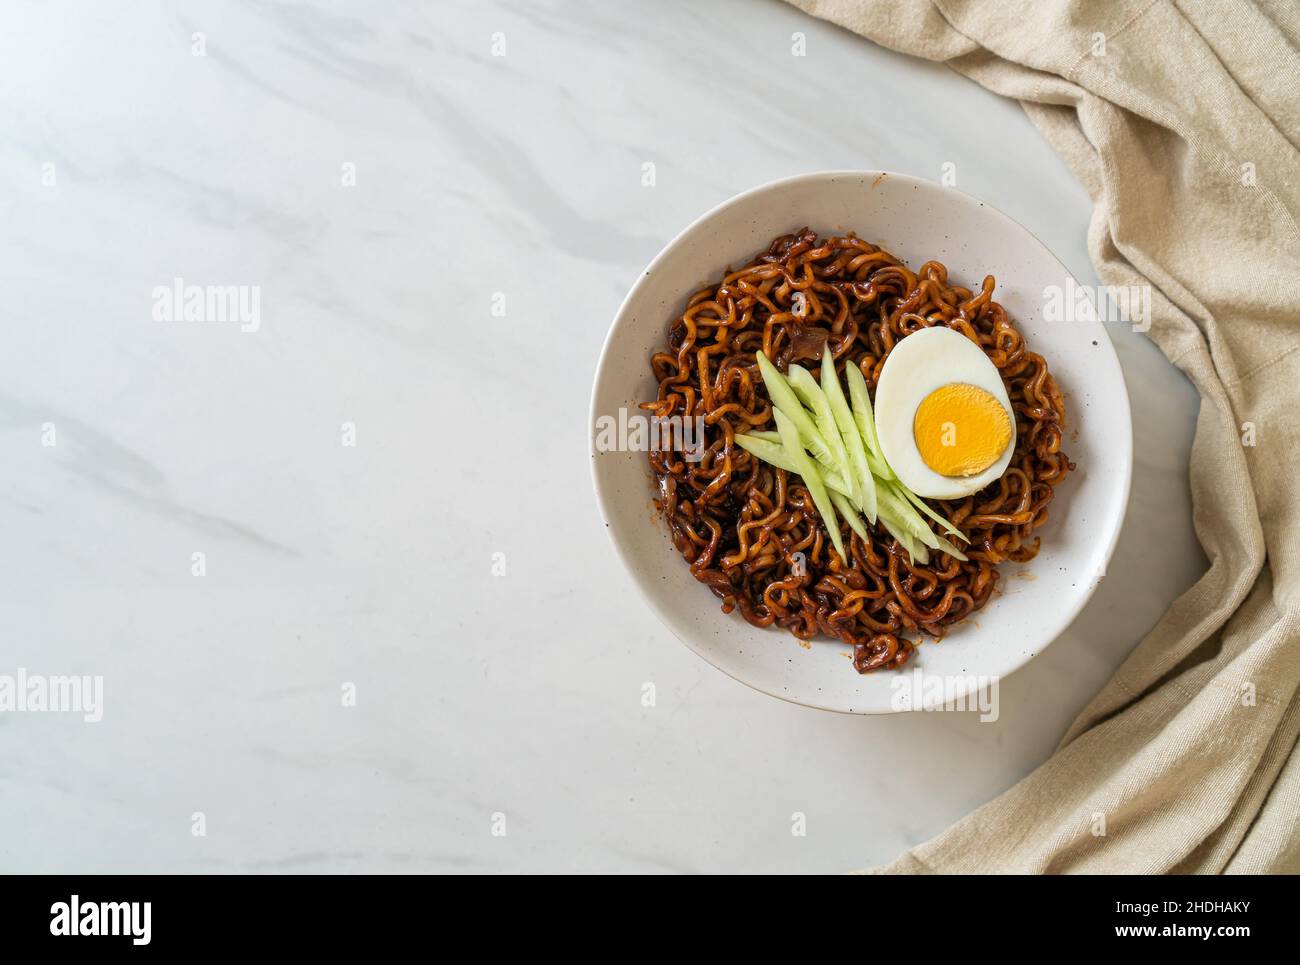 Nouilles instantanées coréennes avec sauce aux haricots noirs, concombre et œuf dur (Jajangmyeon ou Jajangmyeon) - style culinaire coréen Banque D'Images